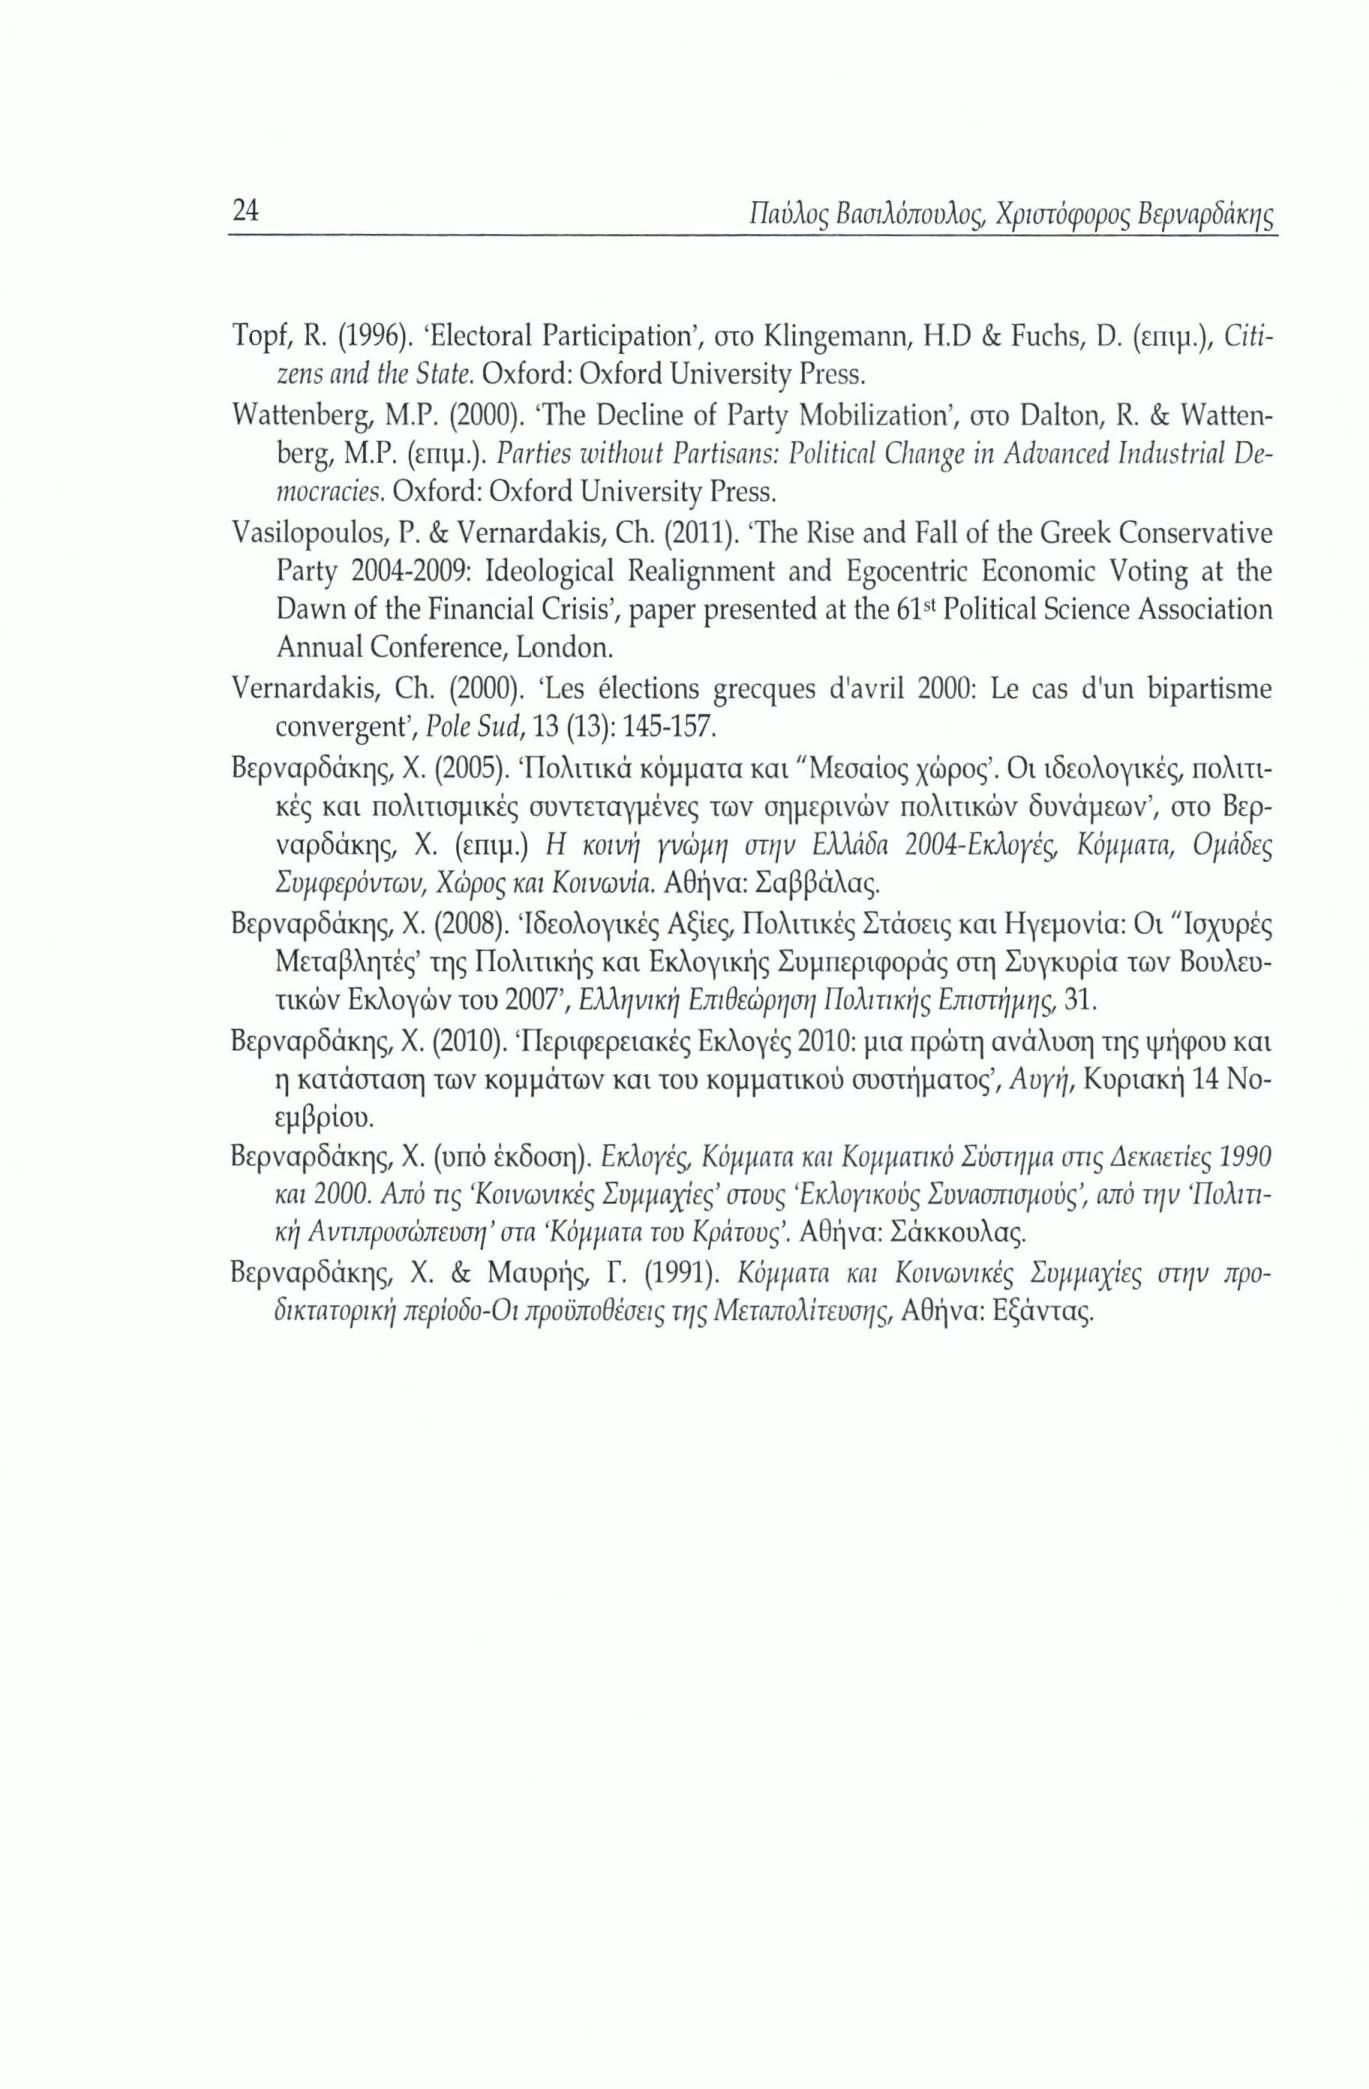 24 Παύλος Βασιλόπουλος, Χριστόφορος Βερναρδάκης Topf, R. (1996). Electoral Participation, στο Klingeinann, H.D & Fuchs, D. (επιμ.), Citizens and the State. Oxford: Oxford University Press.